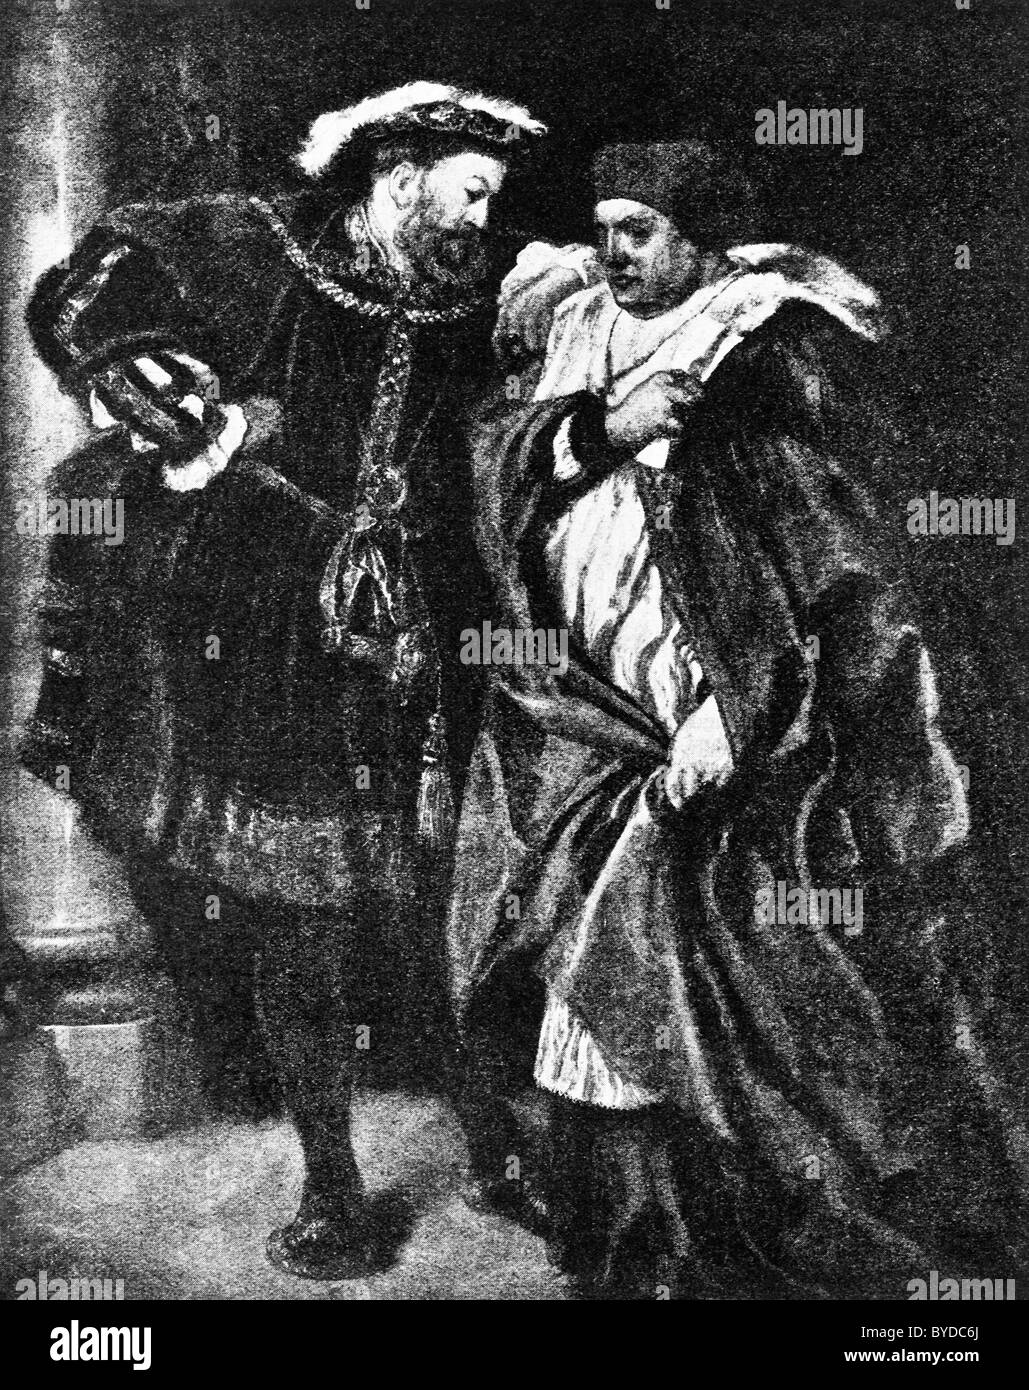 Le Roi Henry VIII parler au Cardinal Thomas Wolsey, dans une peinture de Sir John Gilbert vers 1888 intitulée "Ego et Rex Meus'. Banque D'Images